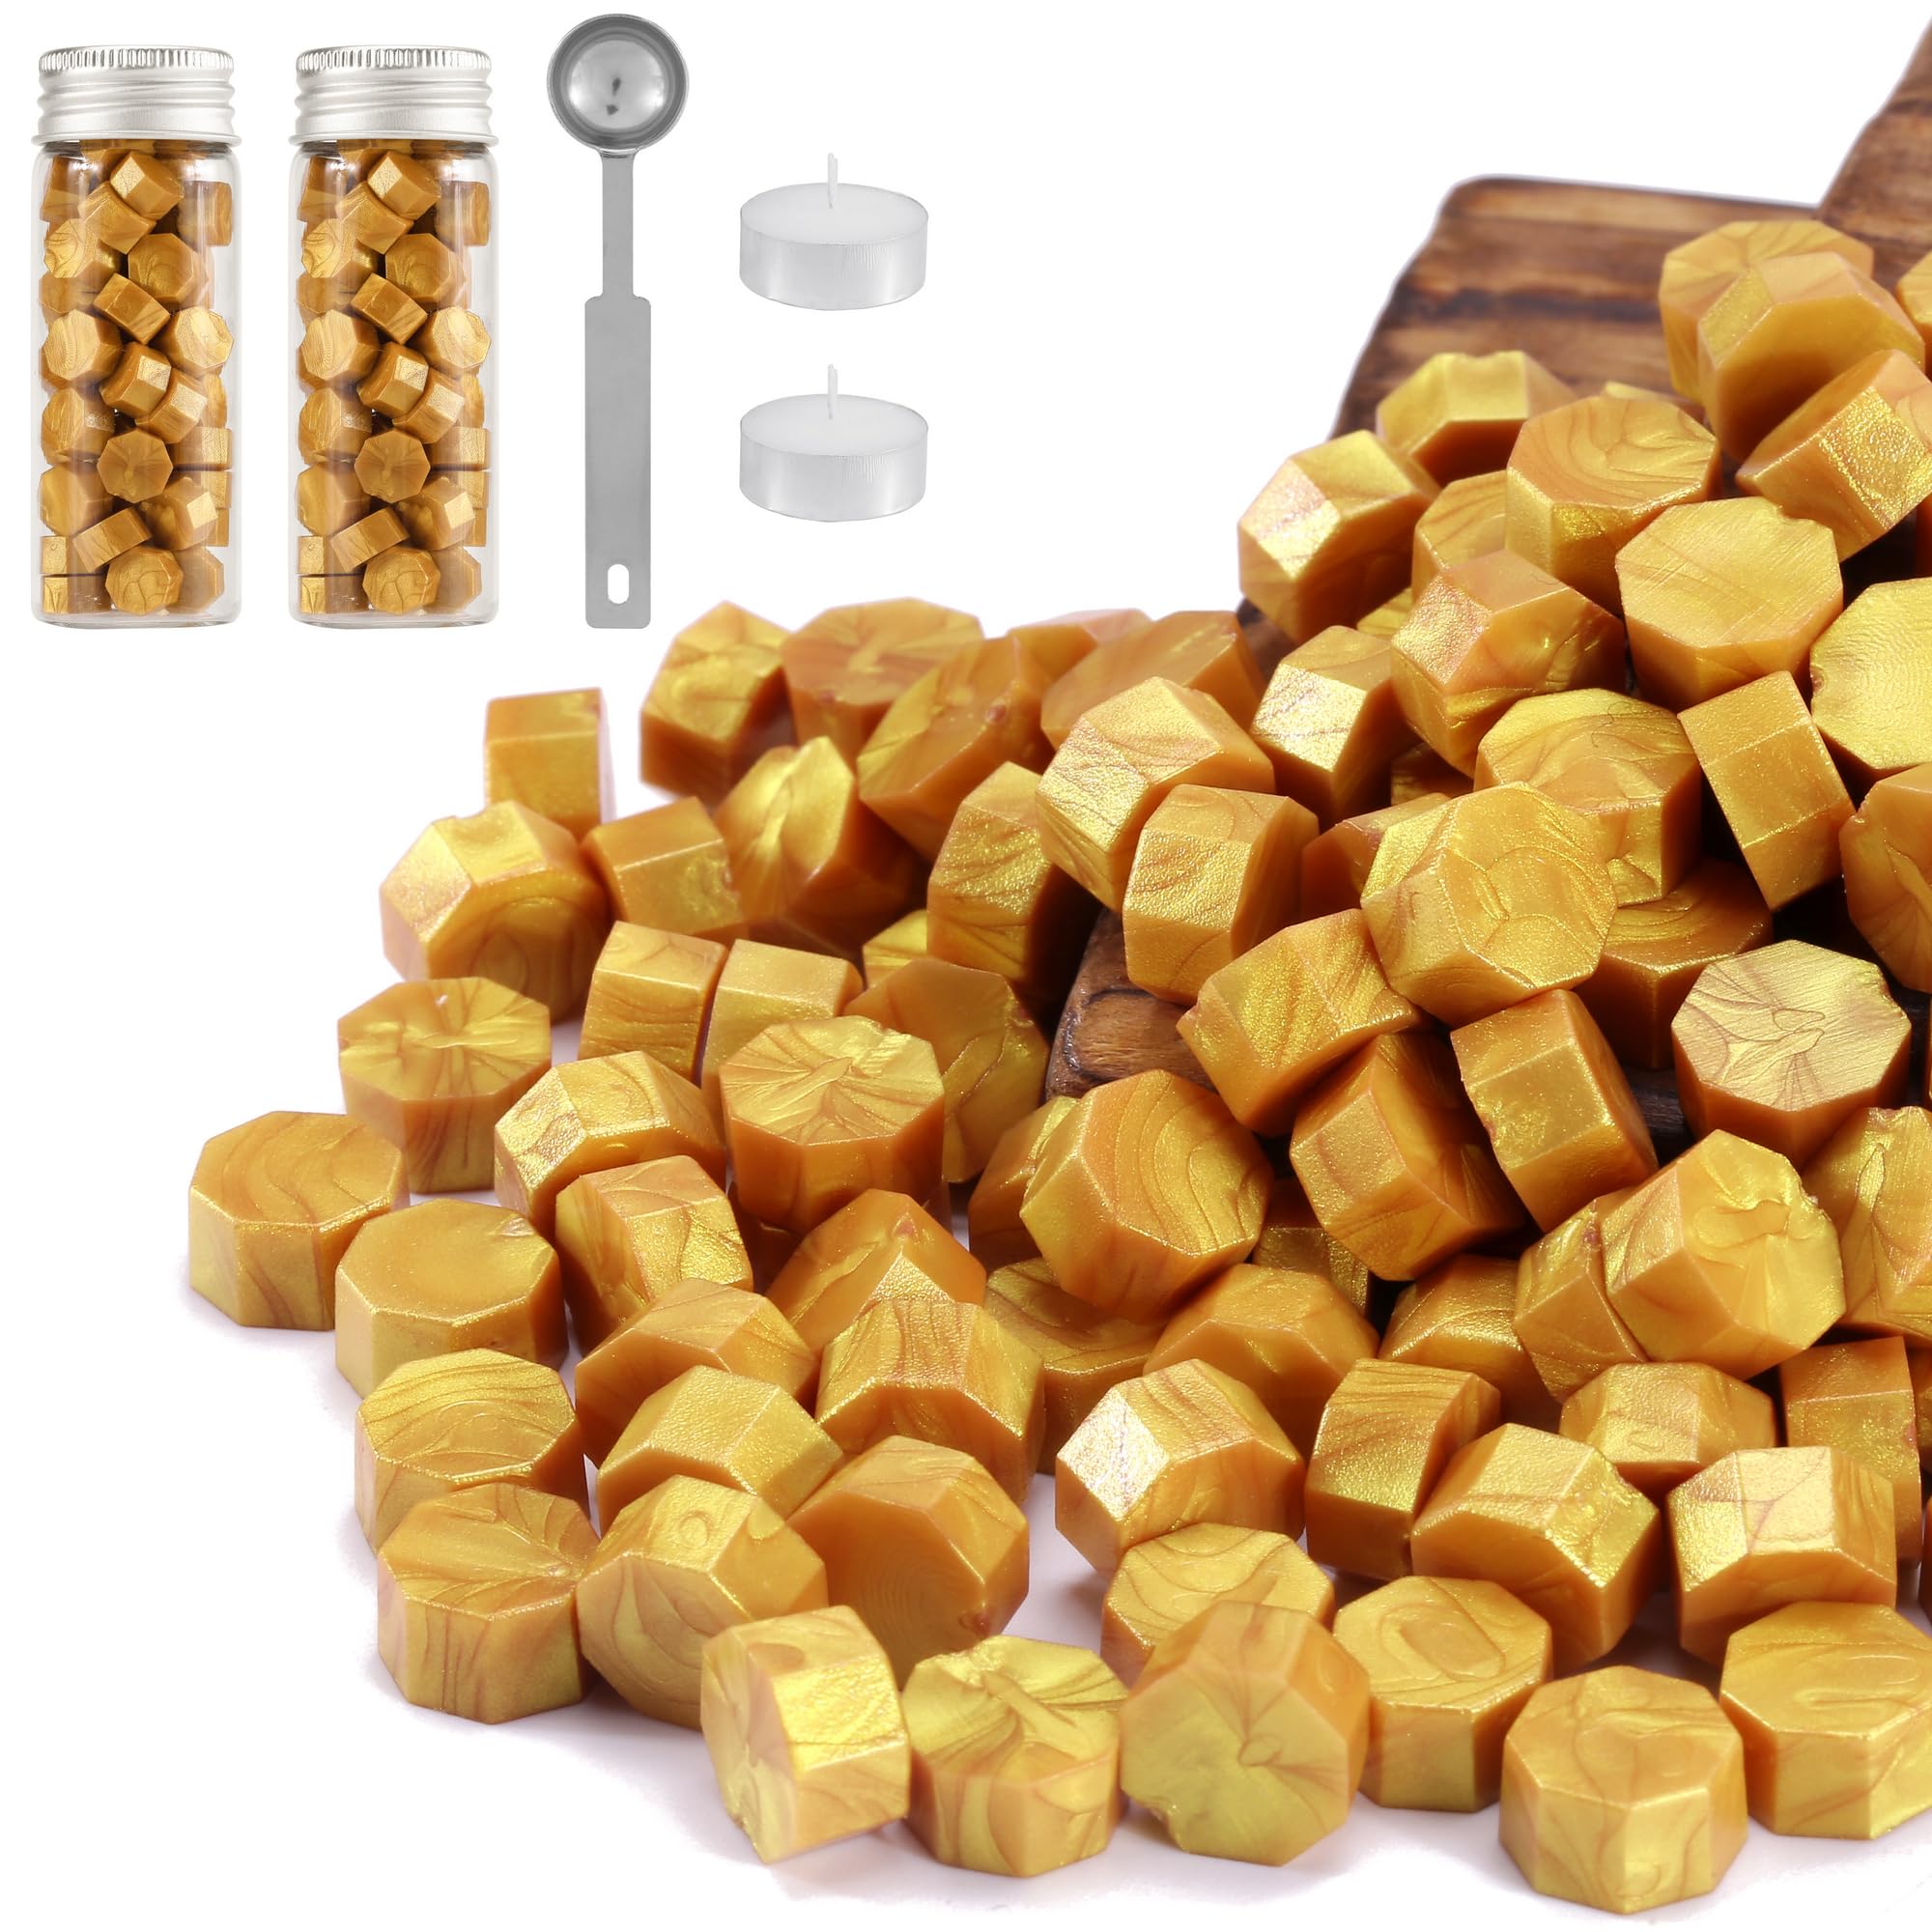 Gold Wax Seal Sticks, HOSAIL 20pcs Gold Wax Sealing Sticks Beads